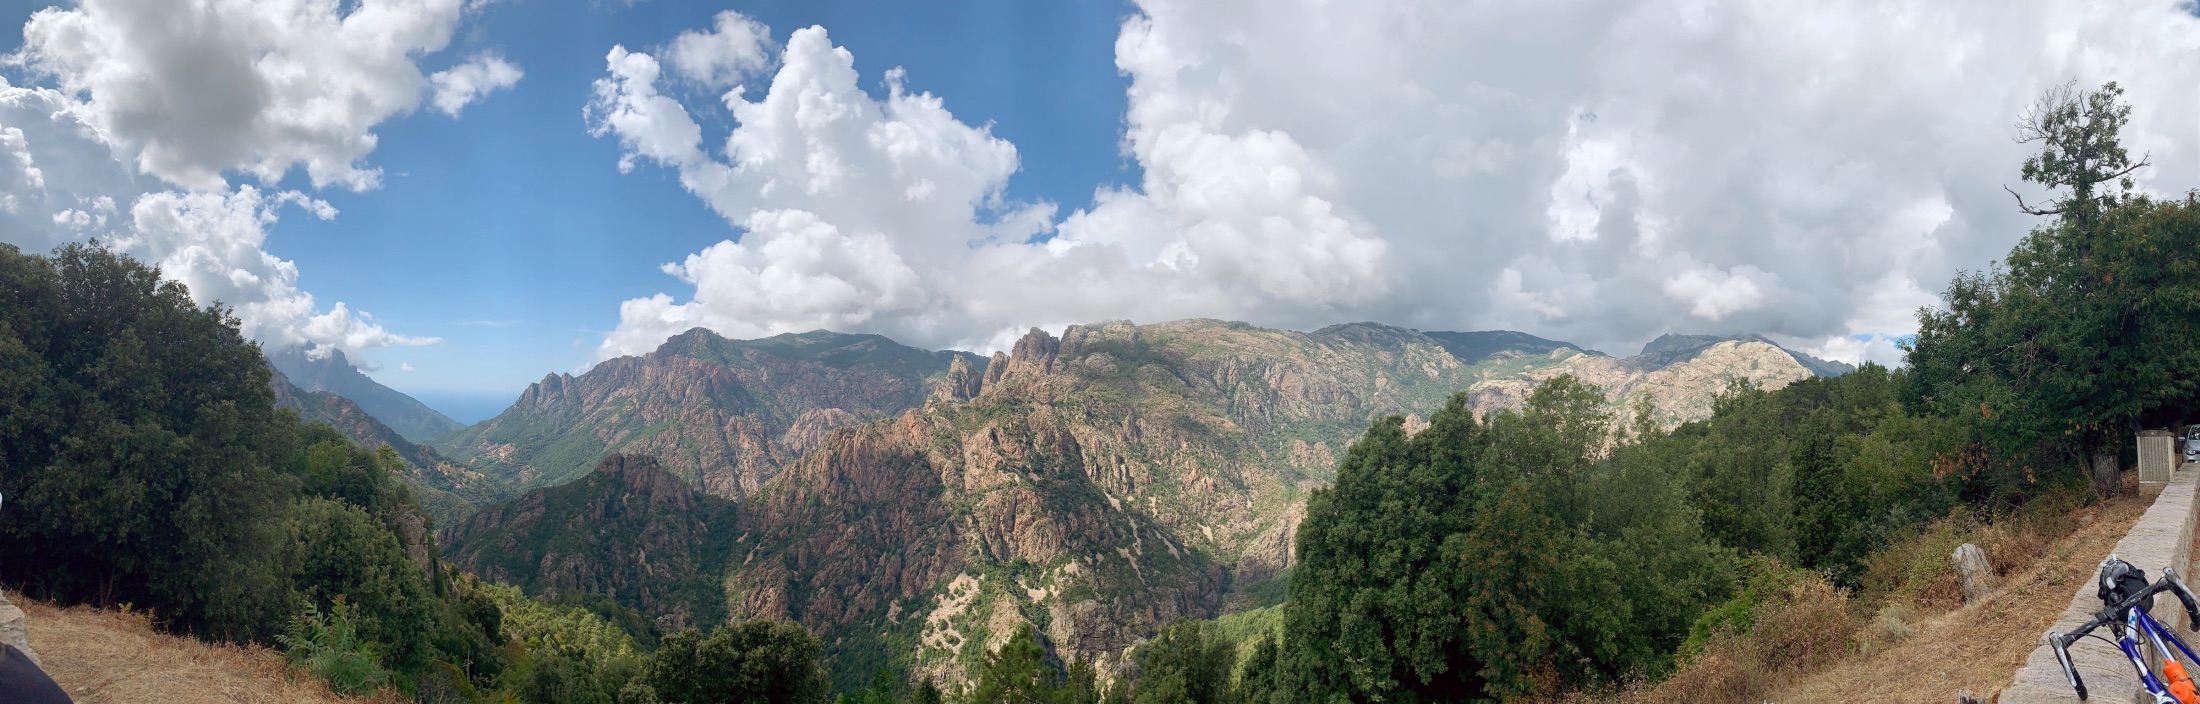 Diepe vallei met grijs bruin gekleurde rotsen met een beetje groene begroeiing in binnenland van Corsica